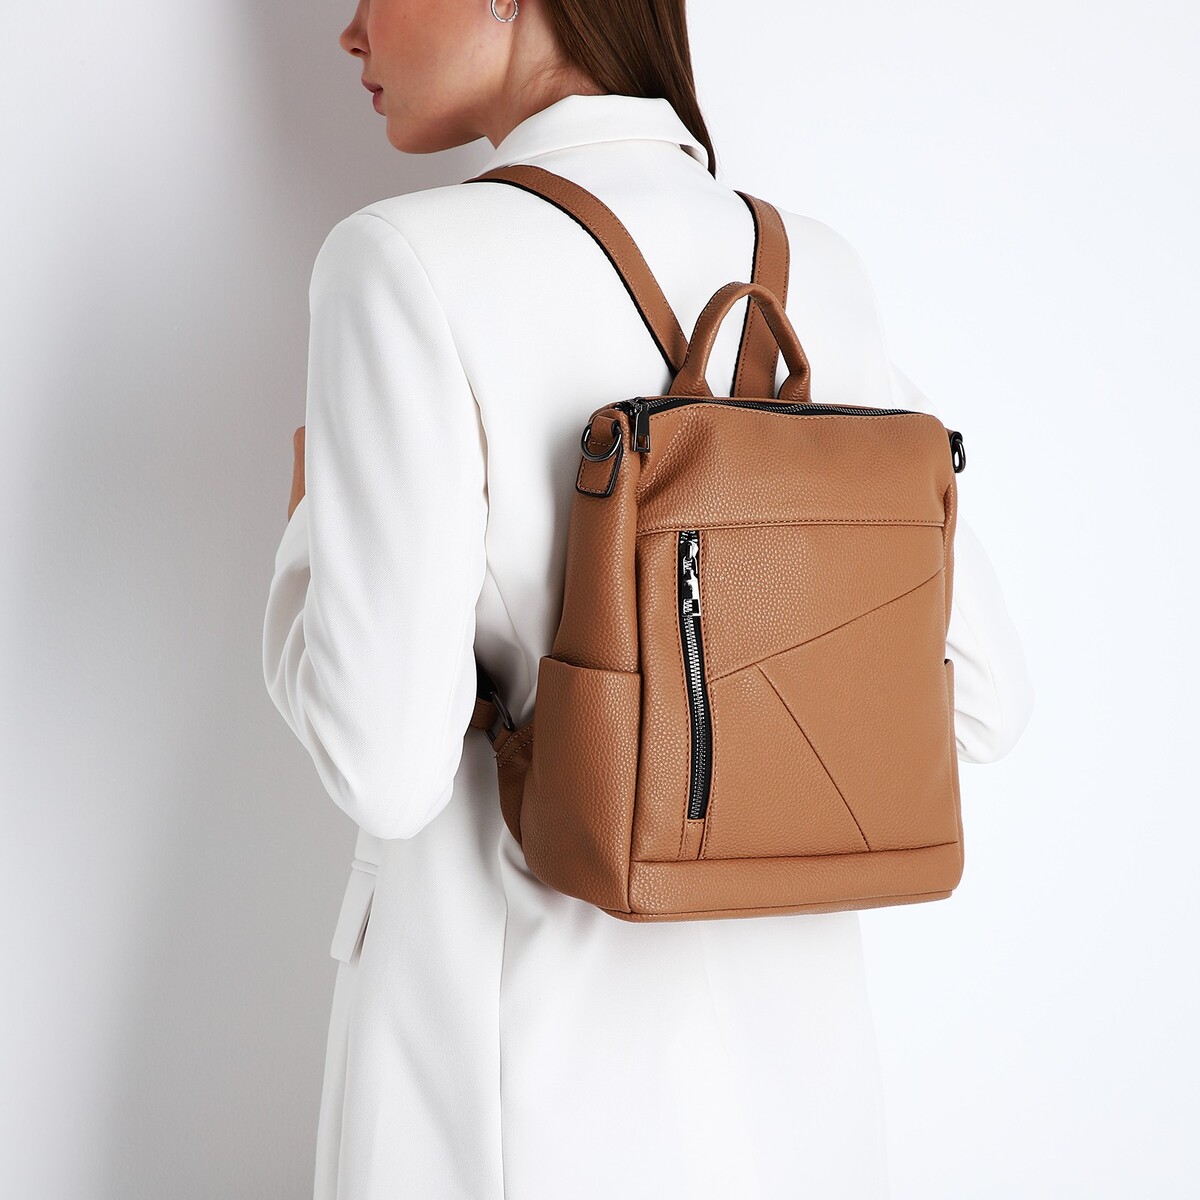 Рюкзак женский из искусственной кожи на молнии, 4 кармана, цвет коричневый рюкзак nuovita capcap tour marrone коричневый